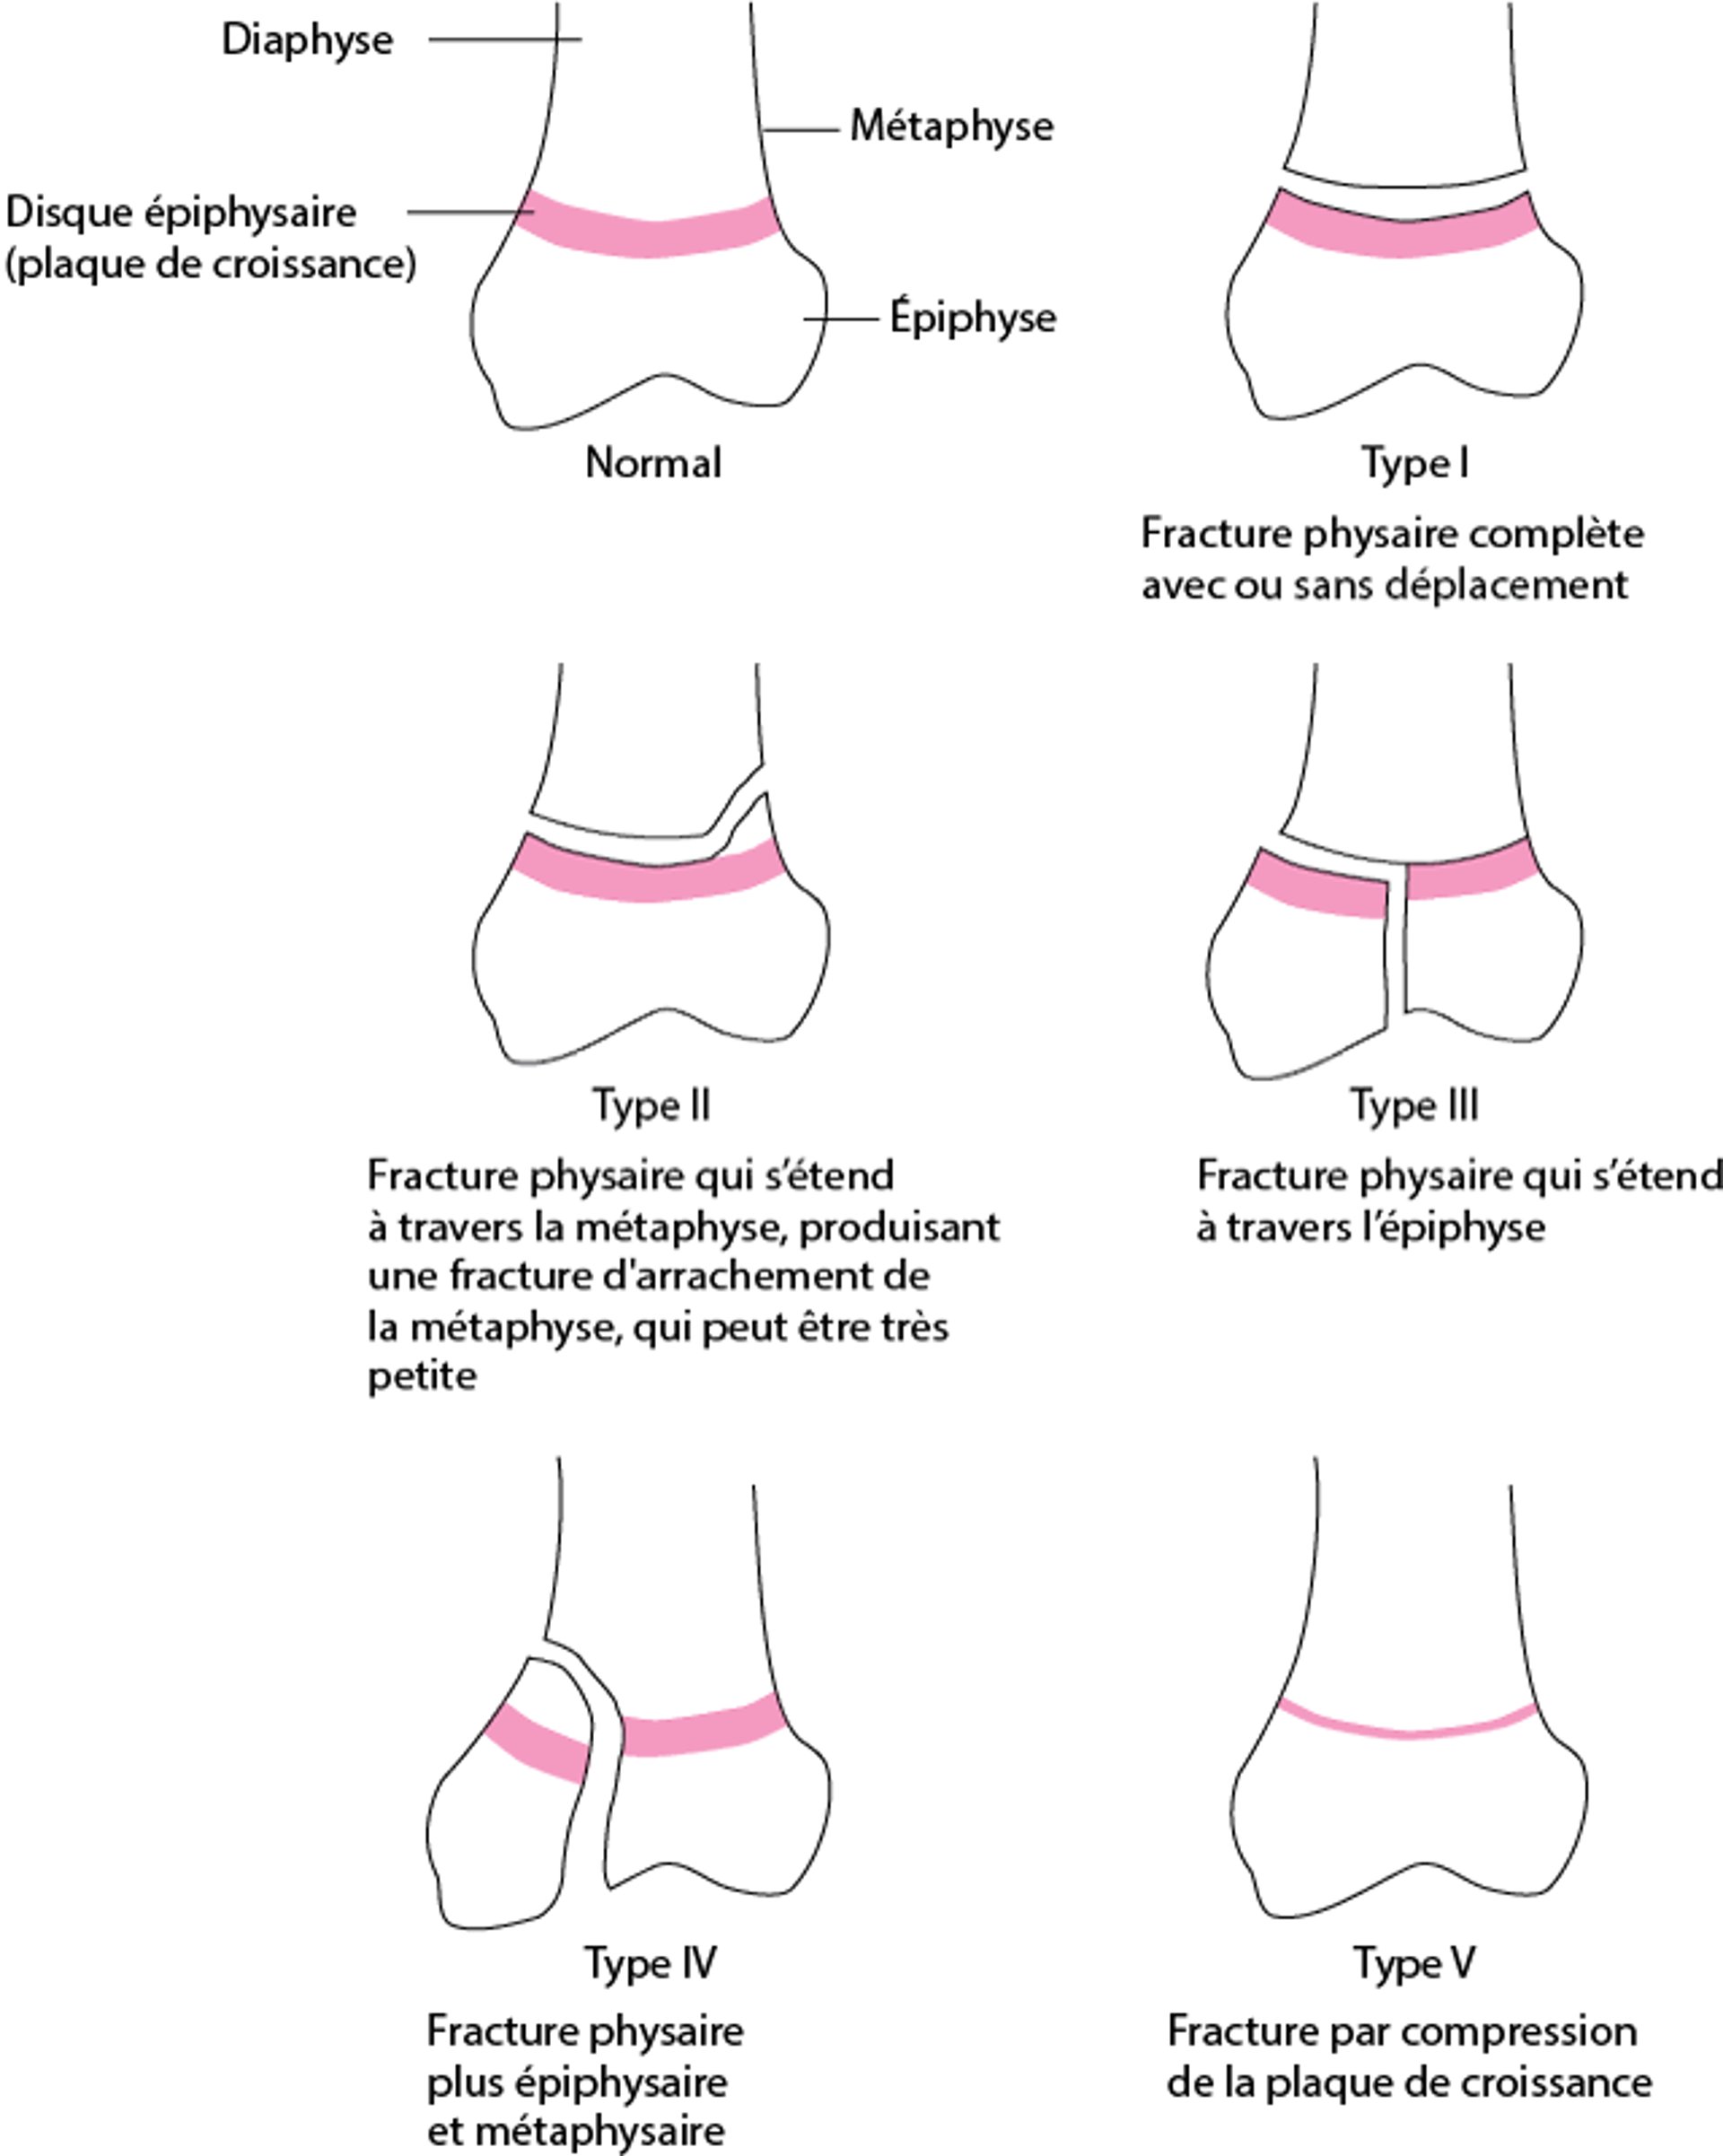 Classification de Salter-Harris pour les fractures-décollement des disques ou plaques épiphysaires (cartilages de conjugaison)